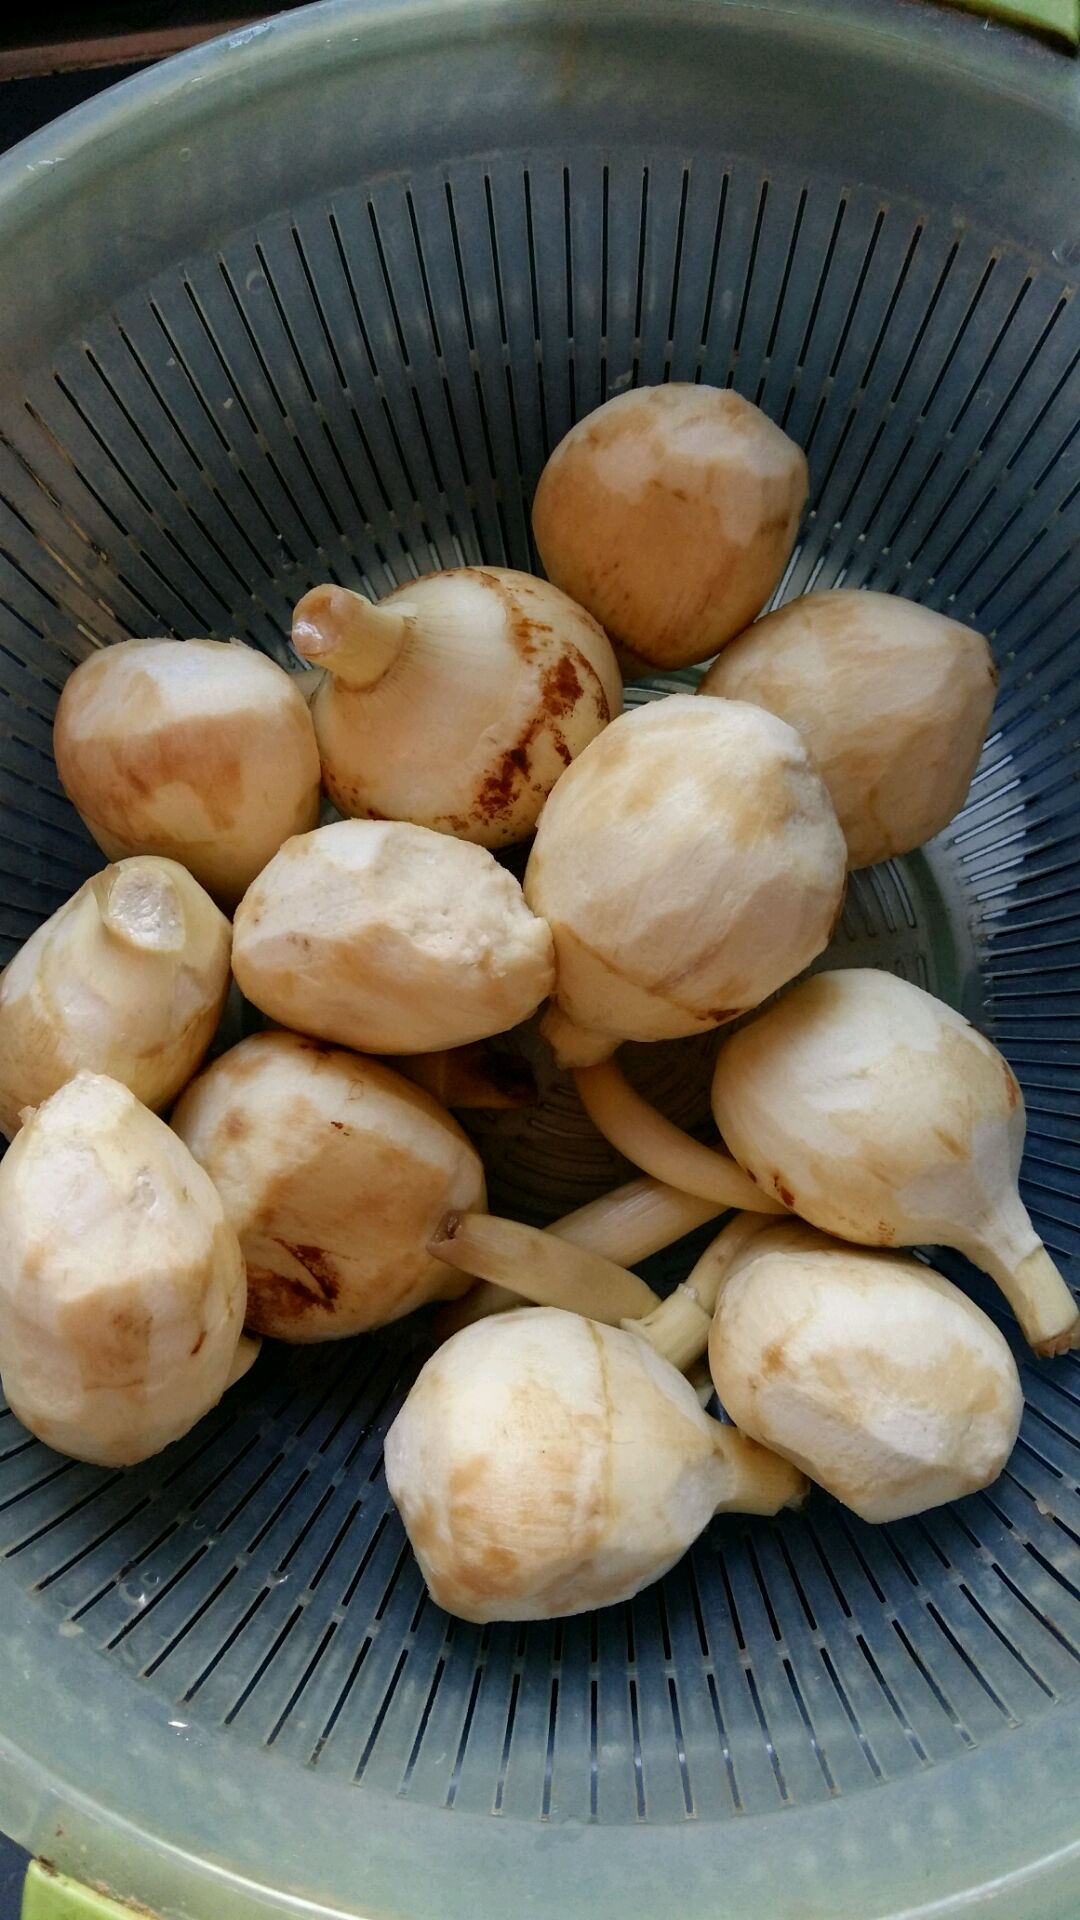 干货勒藕 瘌薯菇 瘌芋头 瘌薯菇 竻慈姑 勒慈菇-阿里巴巴